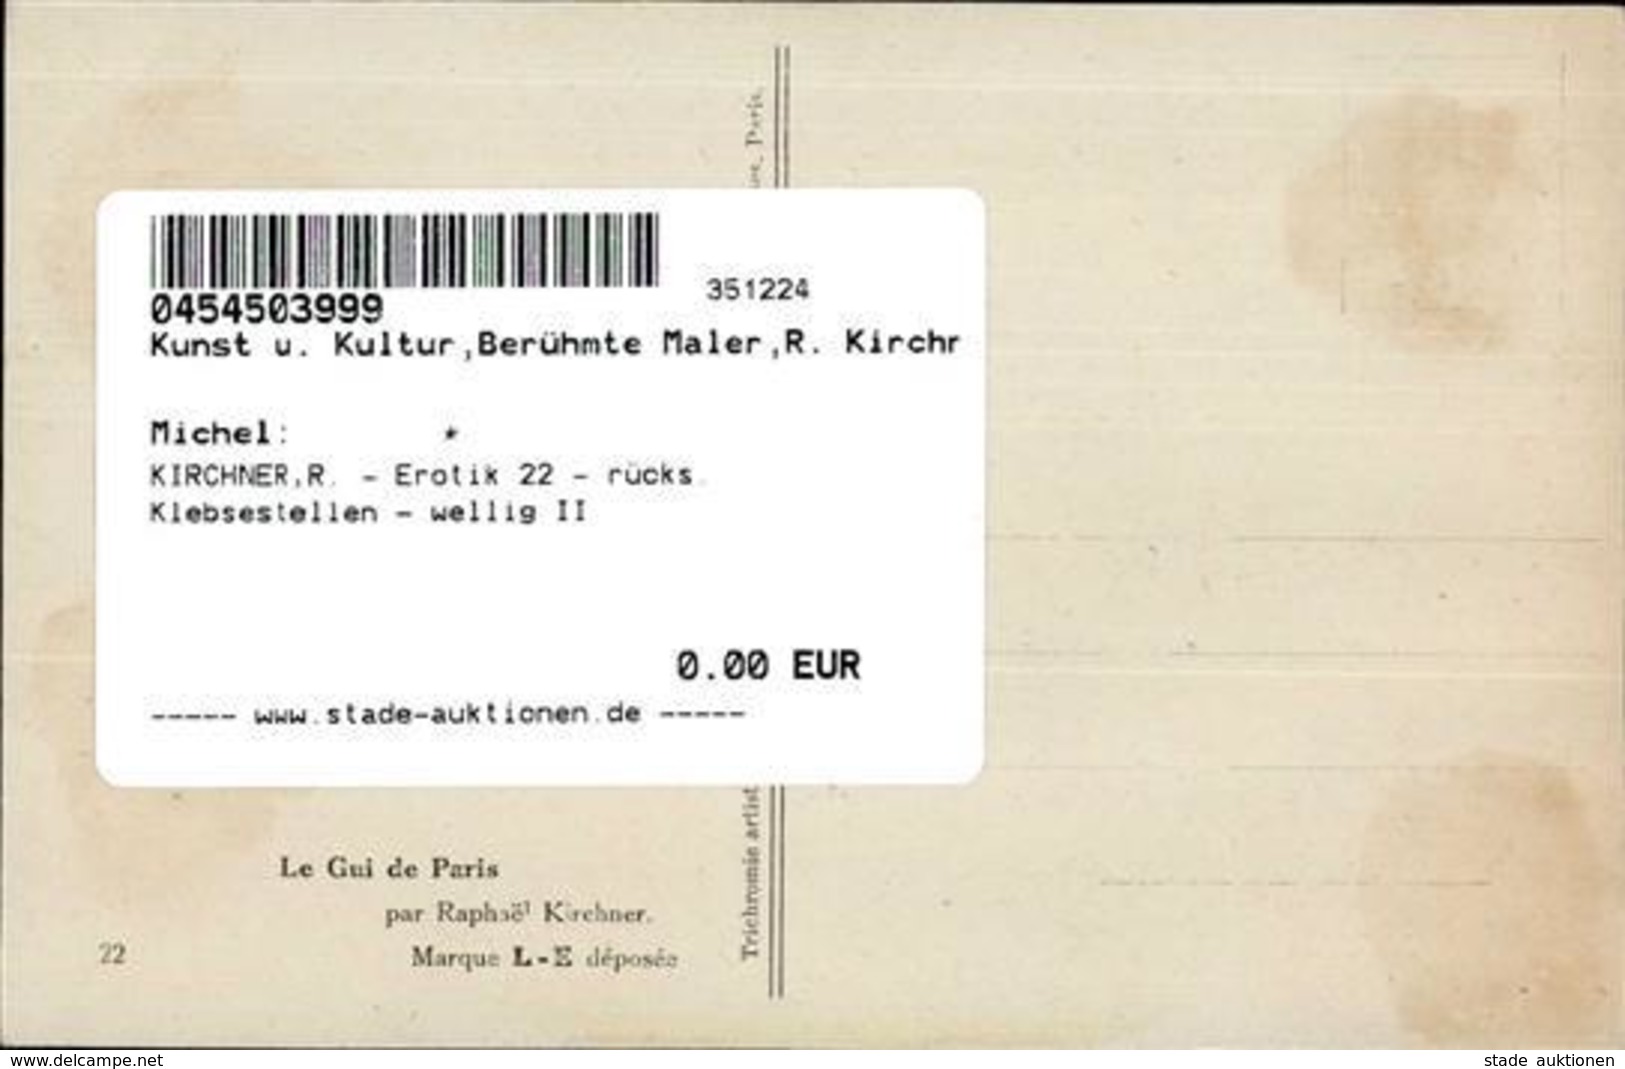 KIRCHNER,R. - Erotik 22 - Rücks. Klebsestellen - Wellig II Erotisme - Kirchner, Raphael